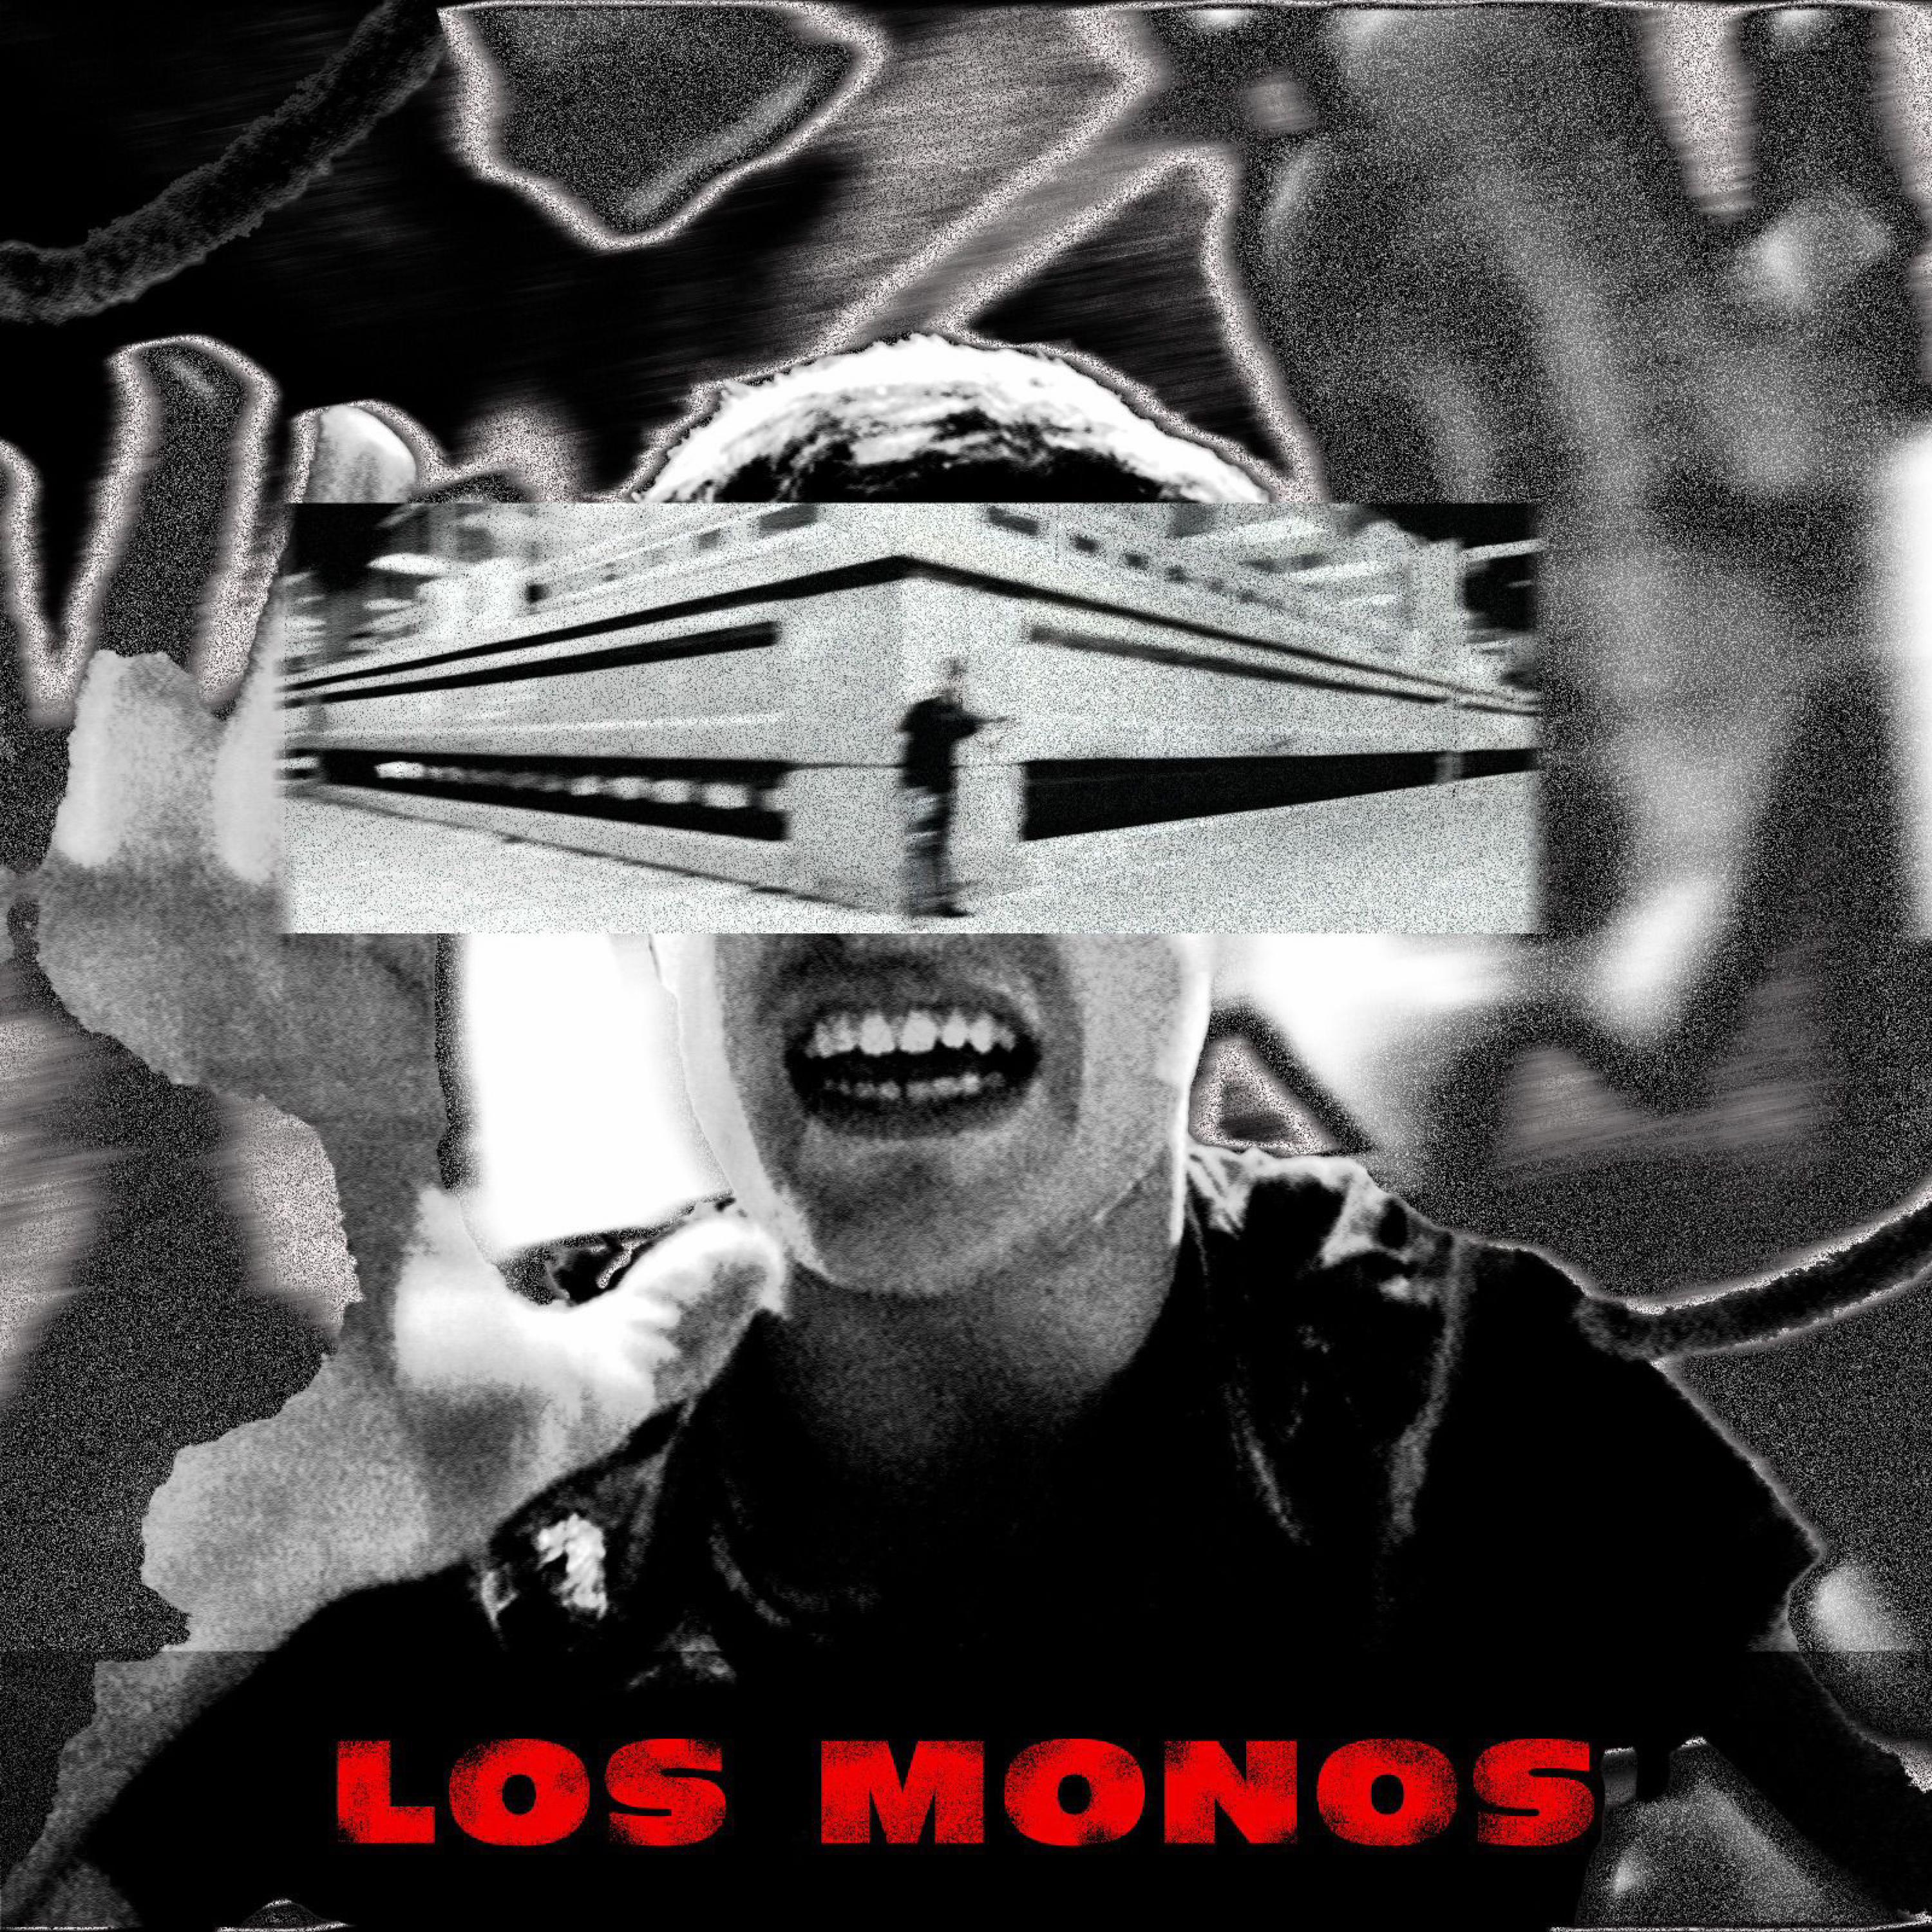 Chor - Los monos (feat. Yabri)